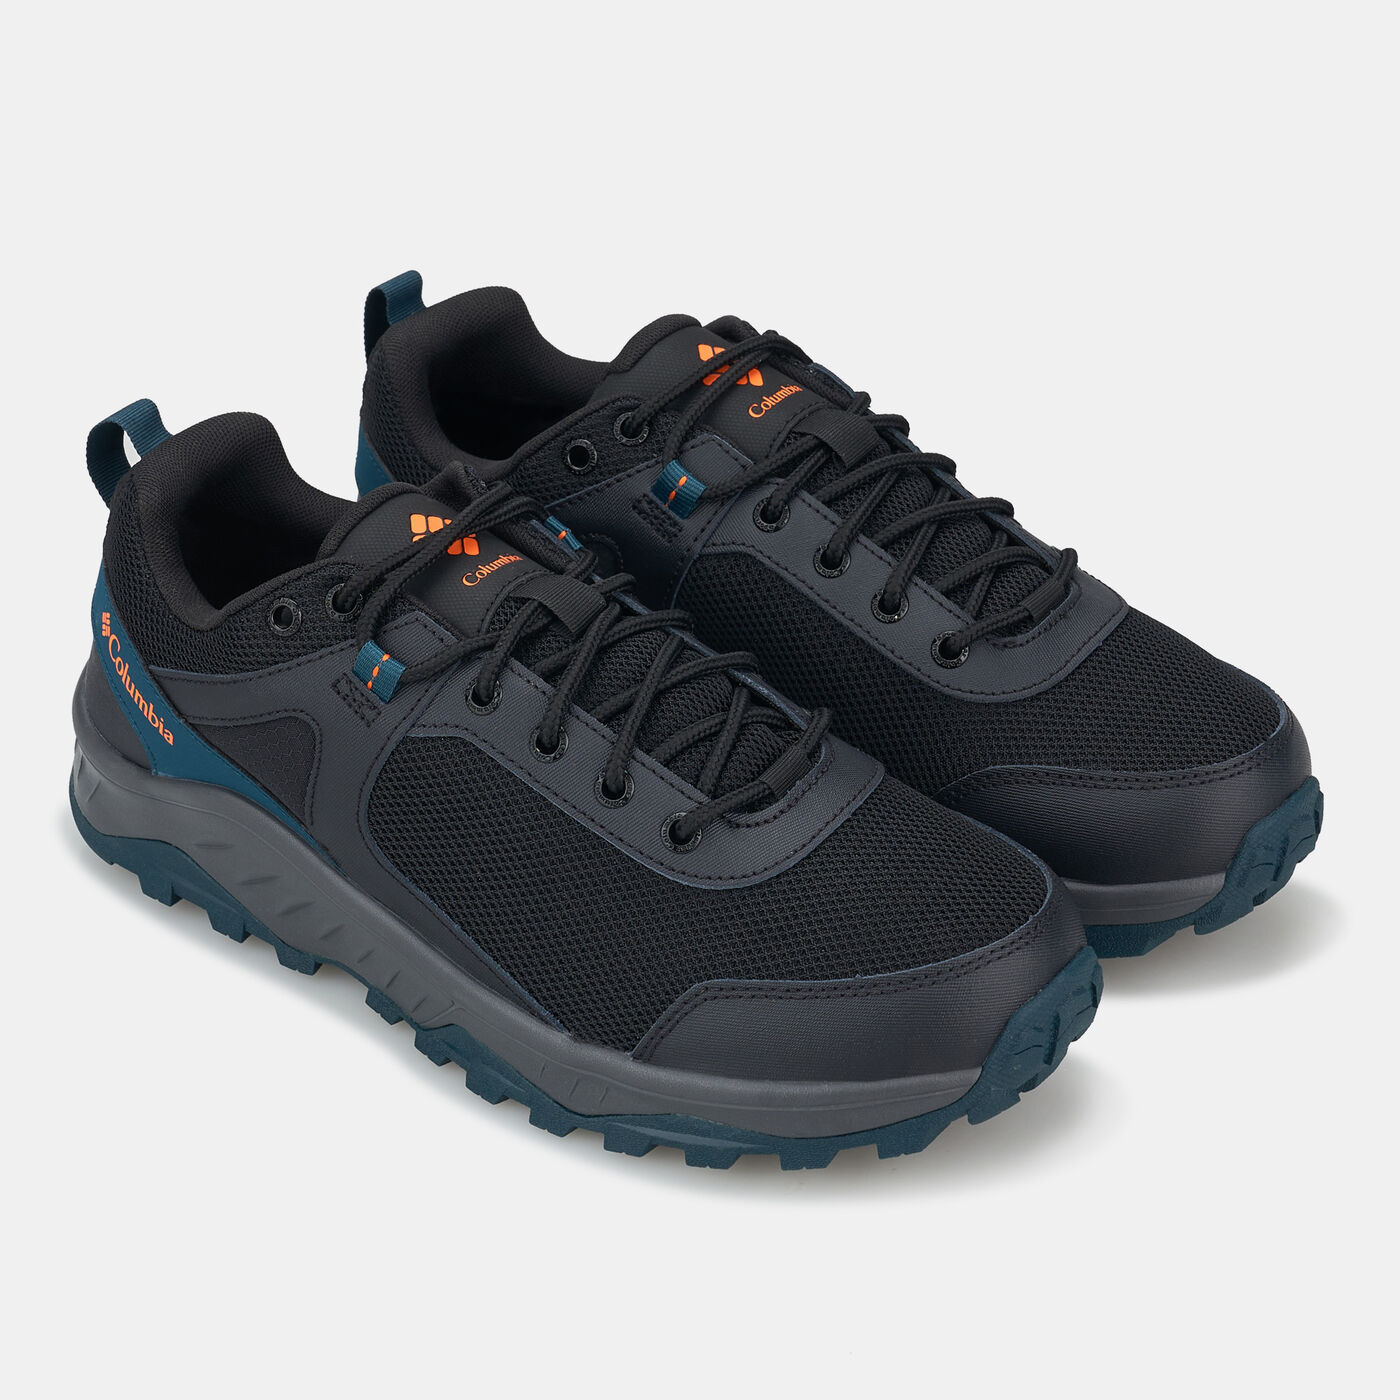 Men's Trailstorm Ascend Waterproof Hiking Shoes